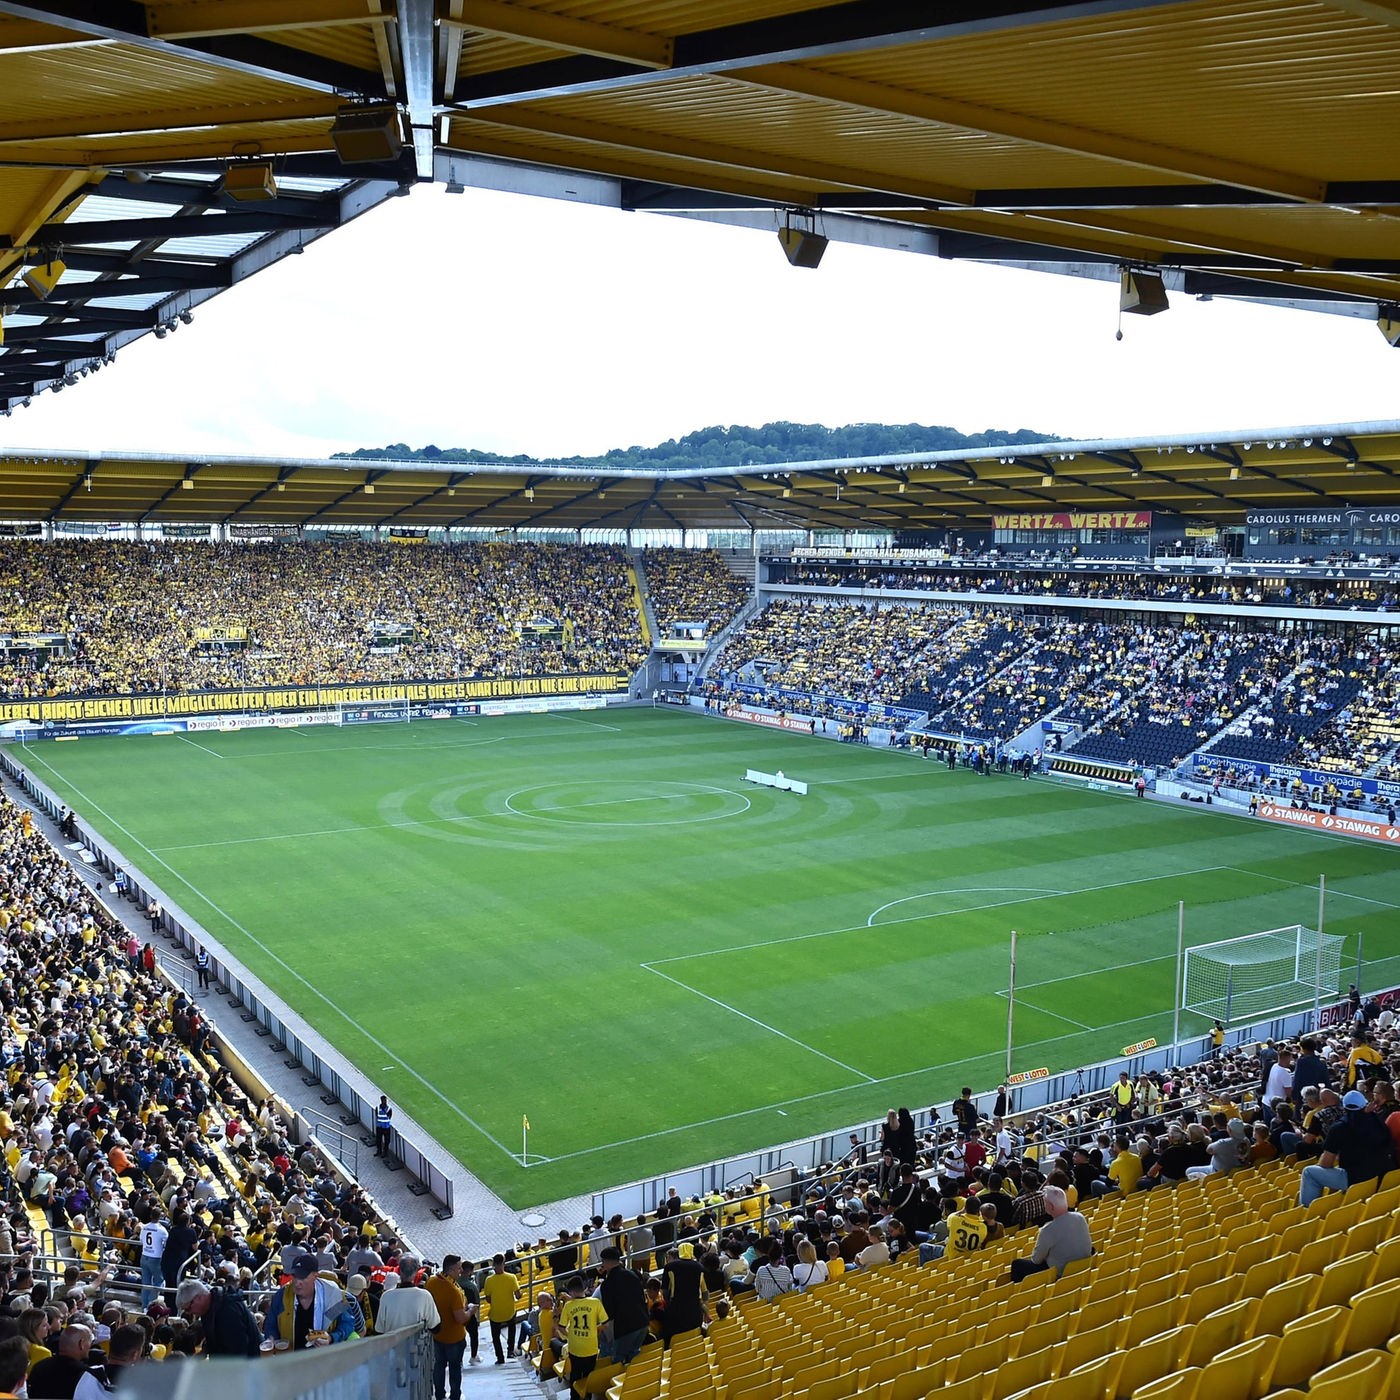 Becherwurf beim SV Lippstadt Alemannia Aachen reagiert mit offenem Brief - Fußball - Sport